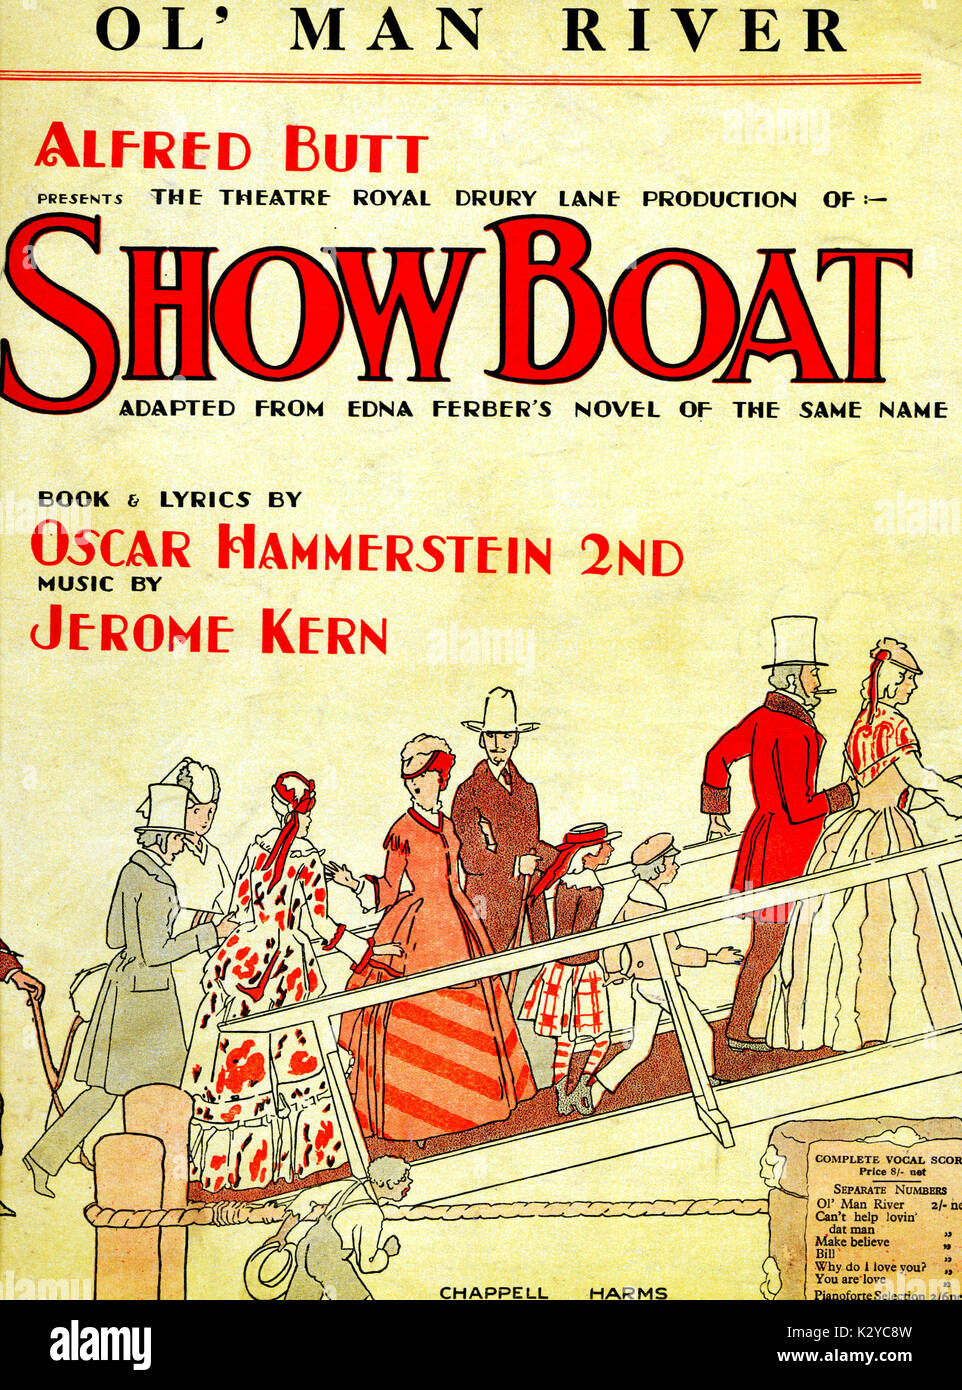 Jerome Kern's 'Scome barca' - Punteggio coperchio della versione per pianoforte e voce di "Ol' Man River', 1927. Parole da Oscar Hammerstein II. Compositore americano di musical, 1885-1945 . Foto Stock